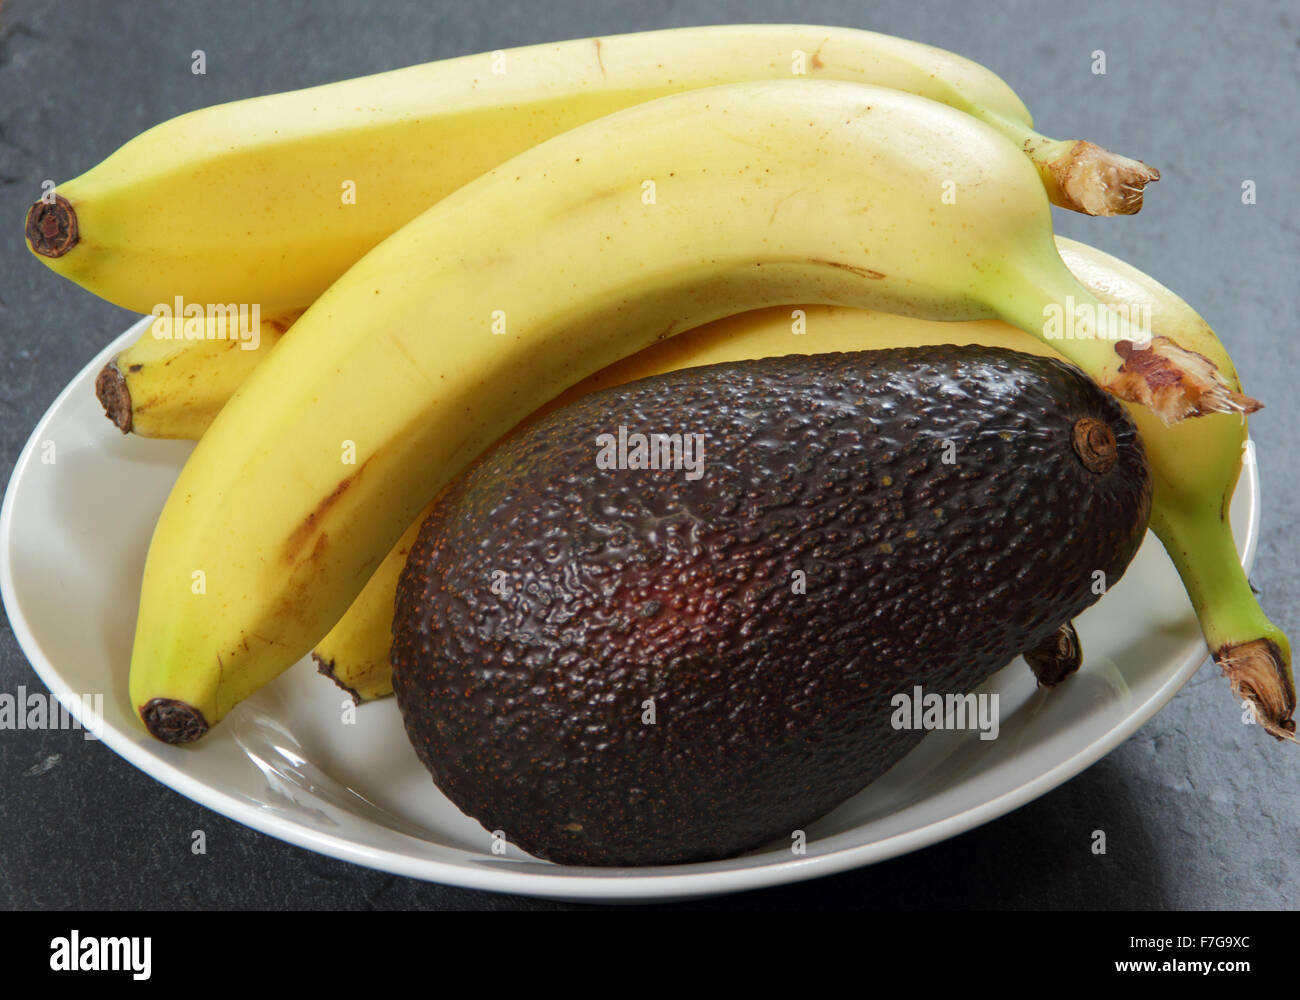 Le banane in una ciotola con un avocado per accelerare il processo di maturazione - impostazione domestica , REGNO UNITO Foto Stock